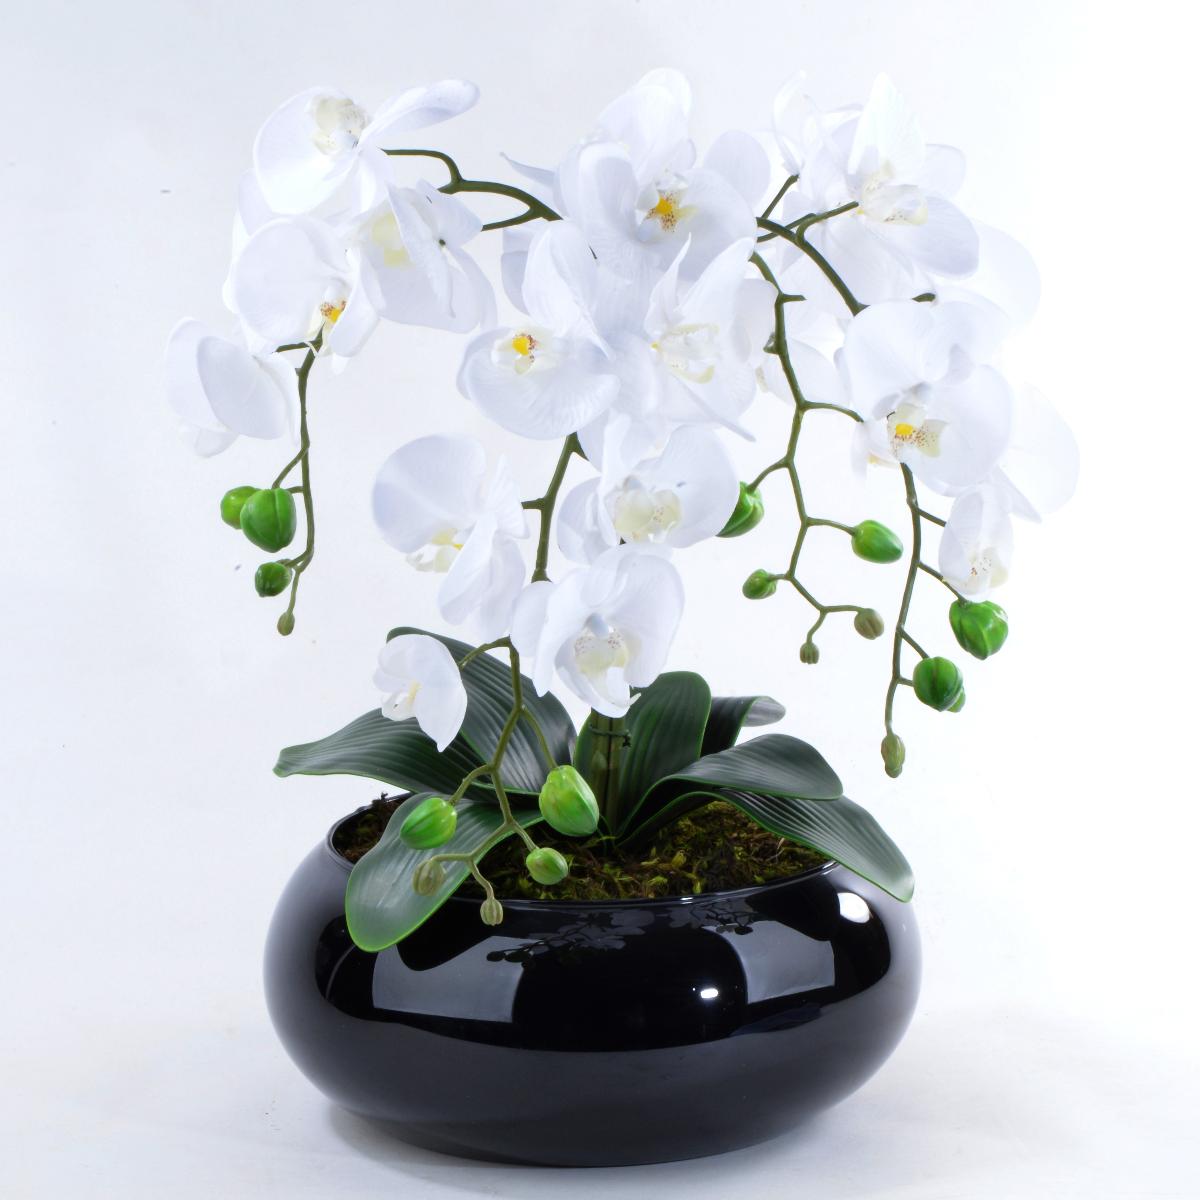 Características do Arranjo de Orquídeas Brancas de Silicone em Vaso Preto.-  Altura: 46 cm, Largura: 37 cm, Profundidade: 37 cm.- Flores Artificiais -  Carrefour